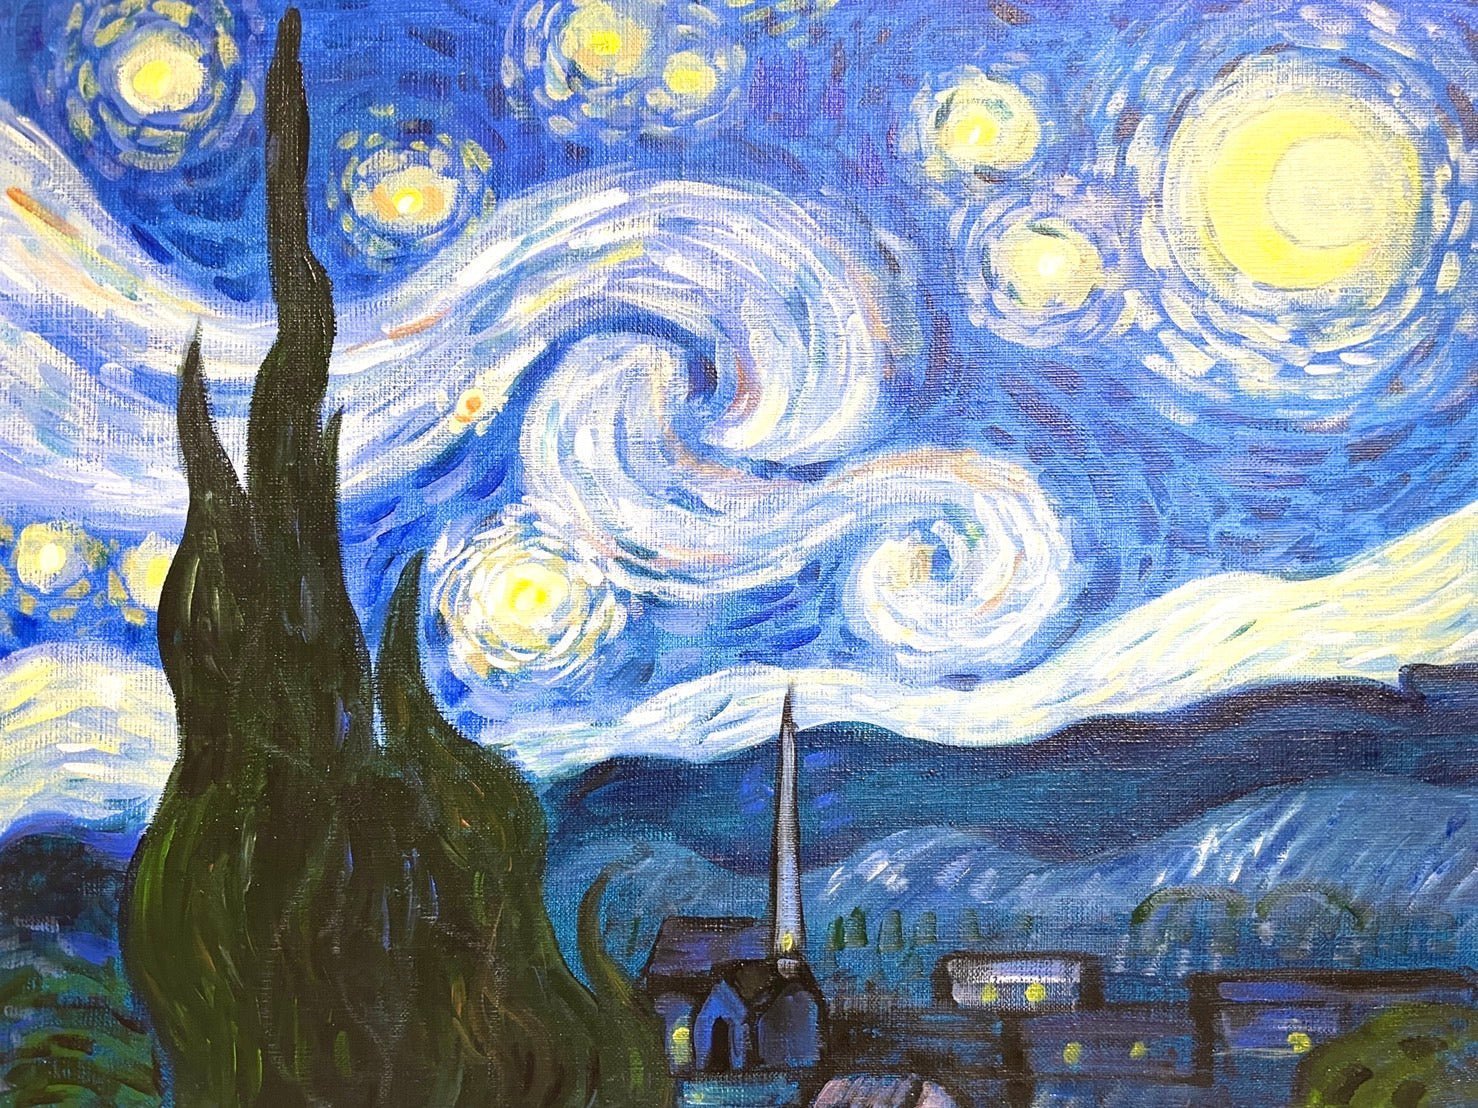 06月02日 (日) 17:00-20:00 | 上野/根津 | フィンセント・ファン・ゴッホ | 星月夜 (The Starry Night by Vincent van Gogh at Ueno/Nezu)